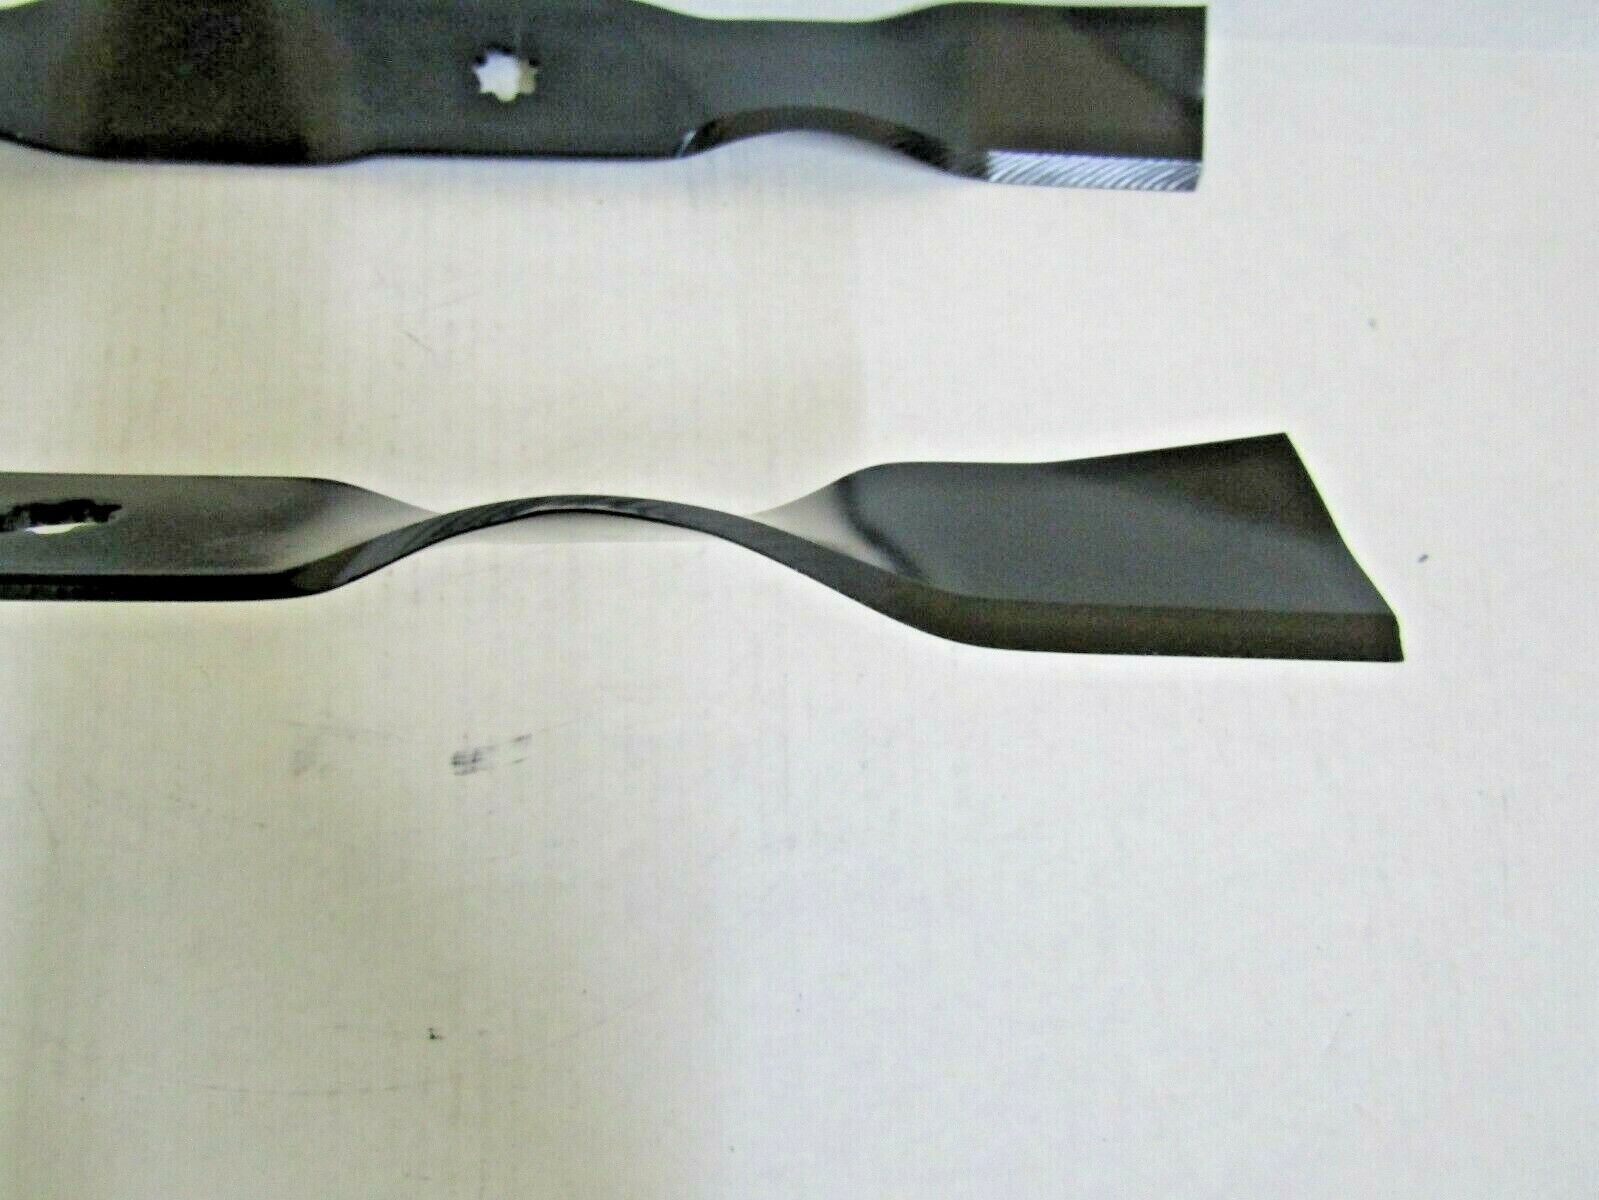 2 USA blades will fit John Deere AM137325 M112991 M154158 GT225 GT235 GT242 - 0